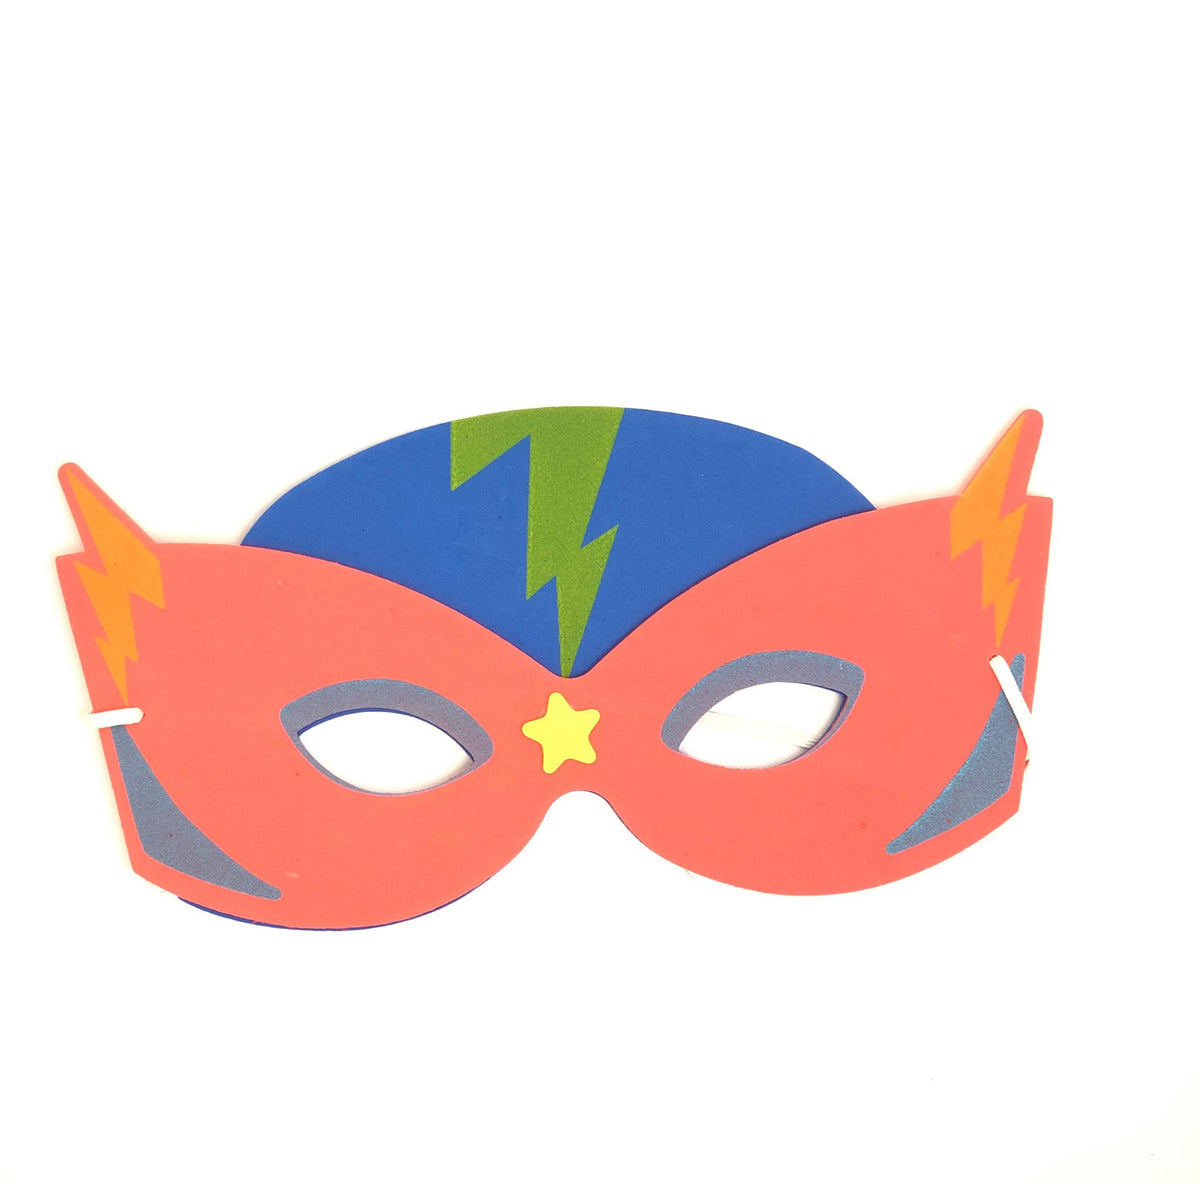 Superhero-Masken, Zap!